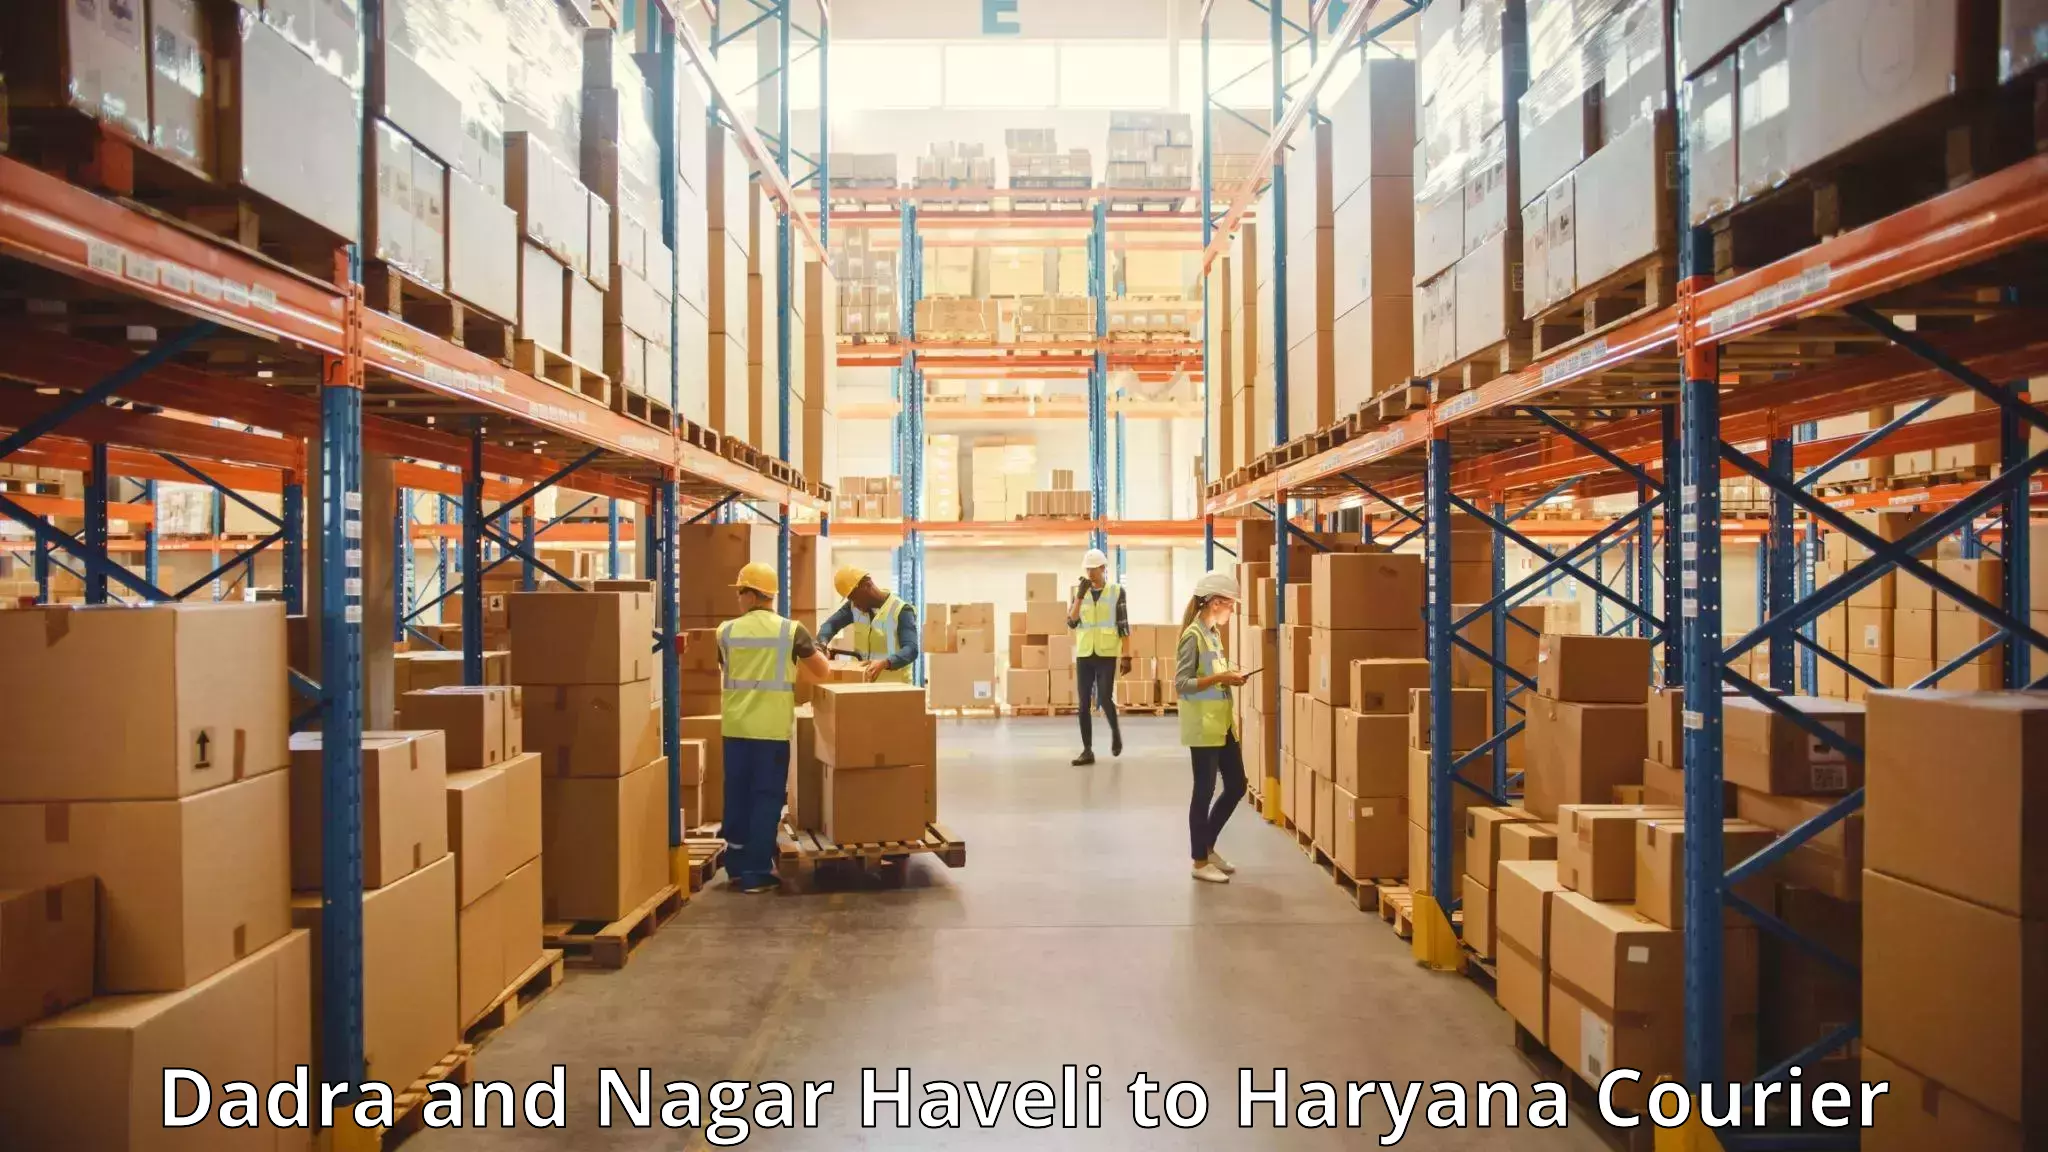 Baggage transport technology Dadra and Nagar Haveli to Rewari